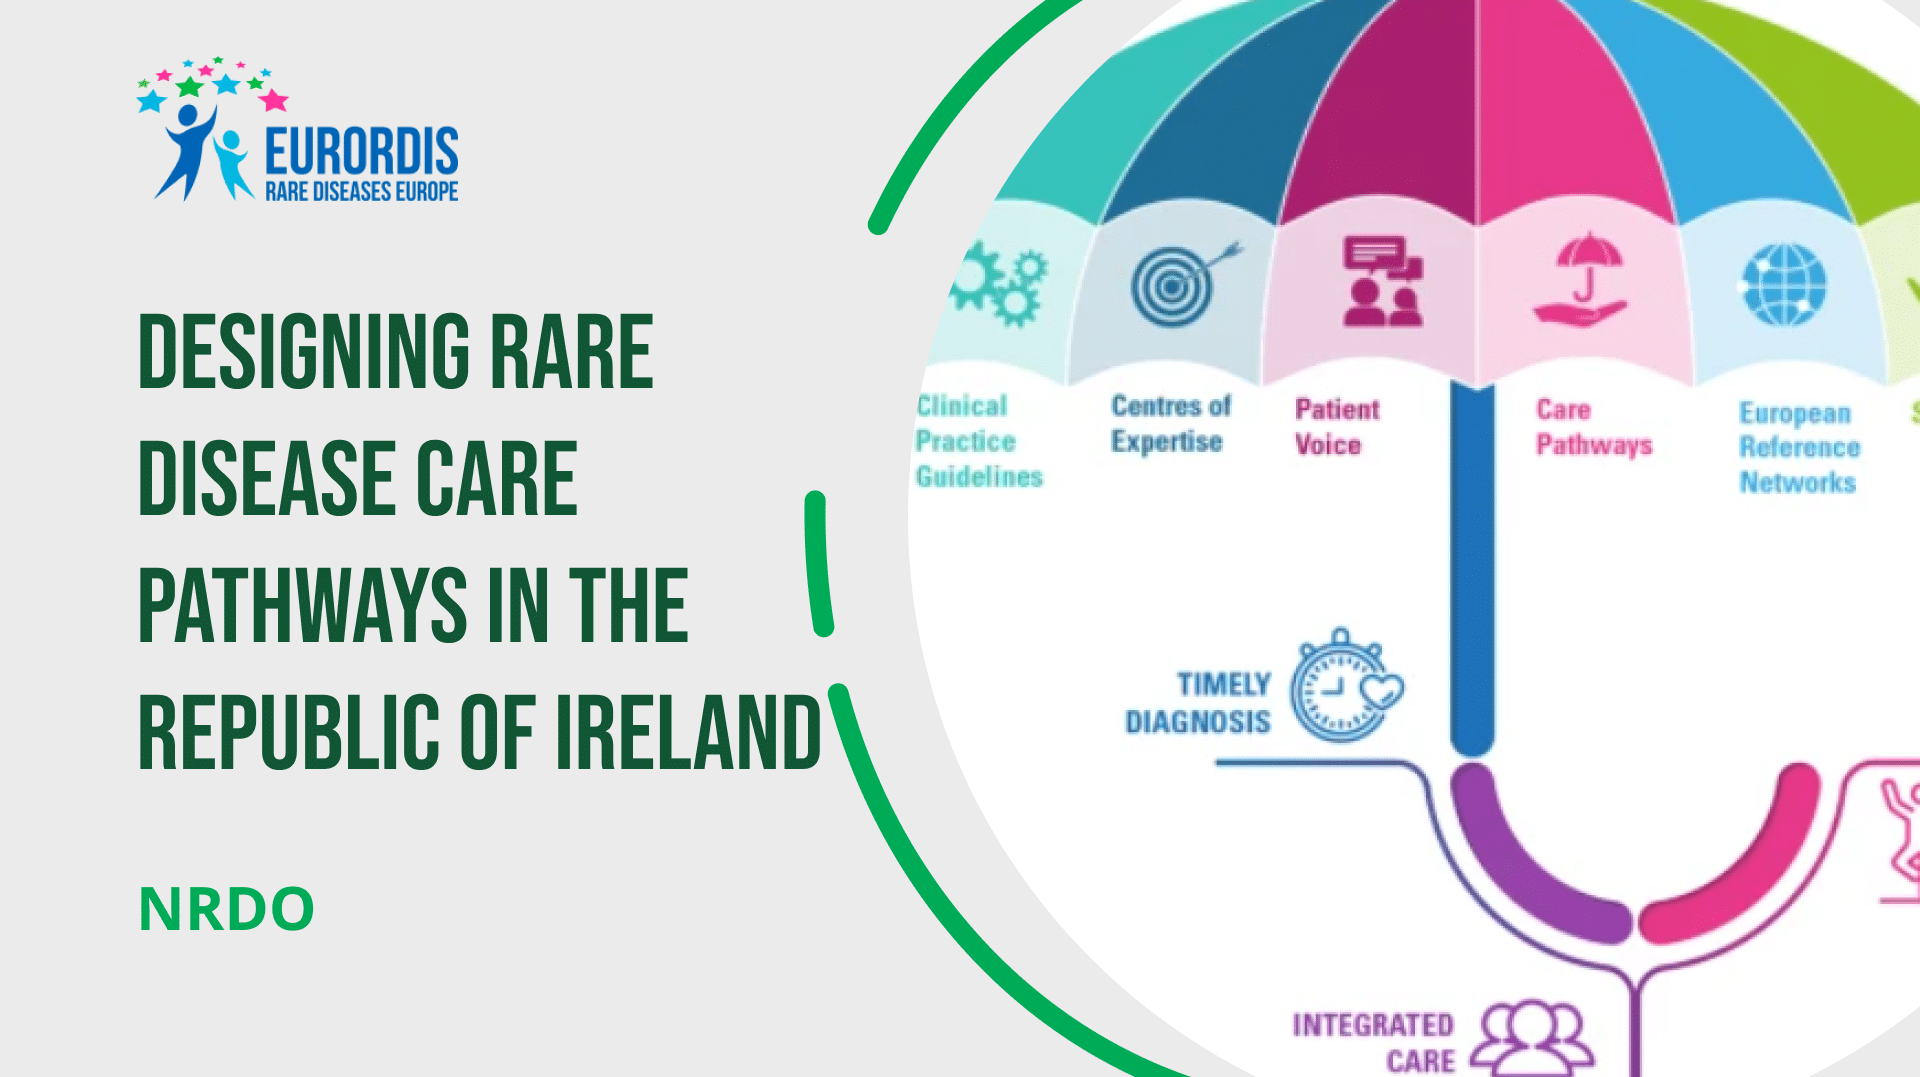 Designing rare disease care pathways in the Republic of Ireland